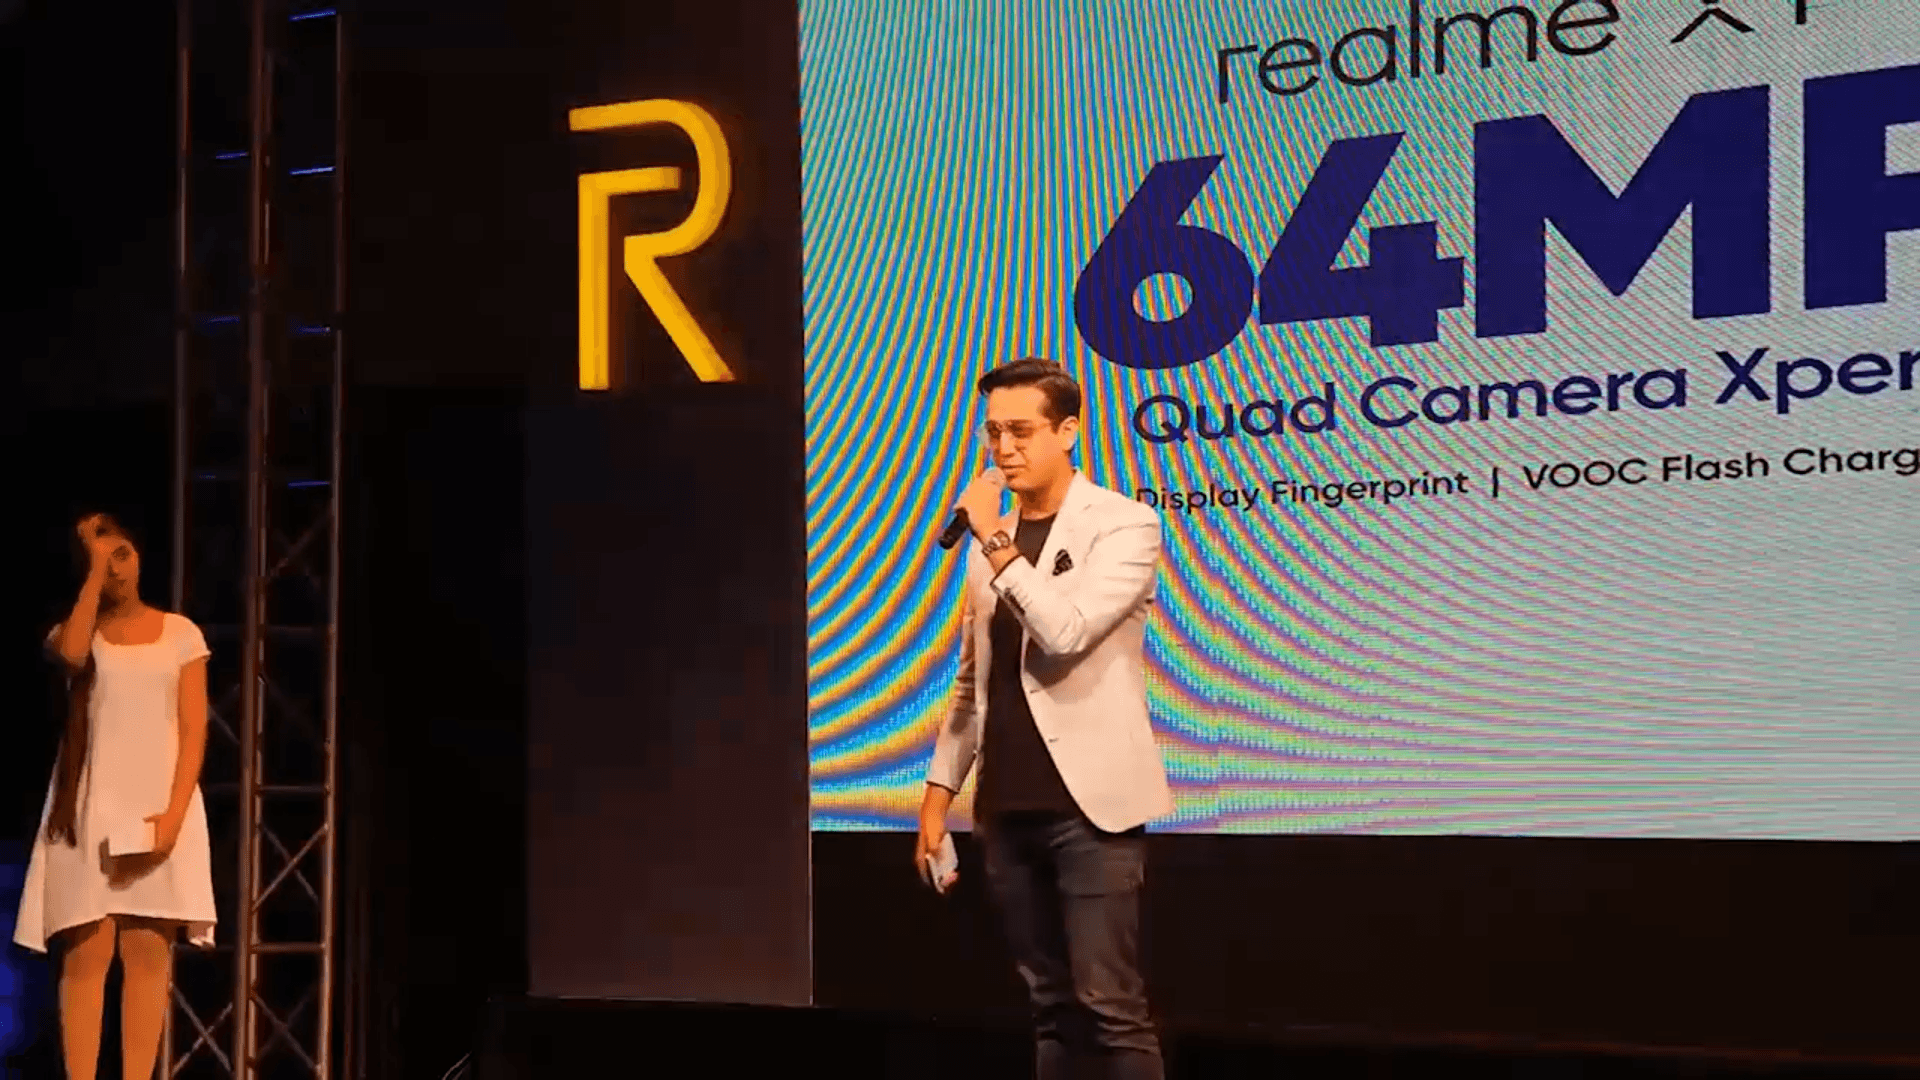 Realme XT Launch Event in Pakistan – OyeYeah